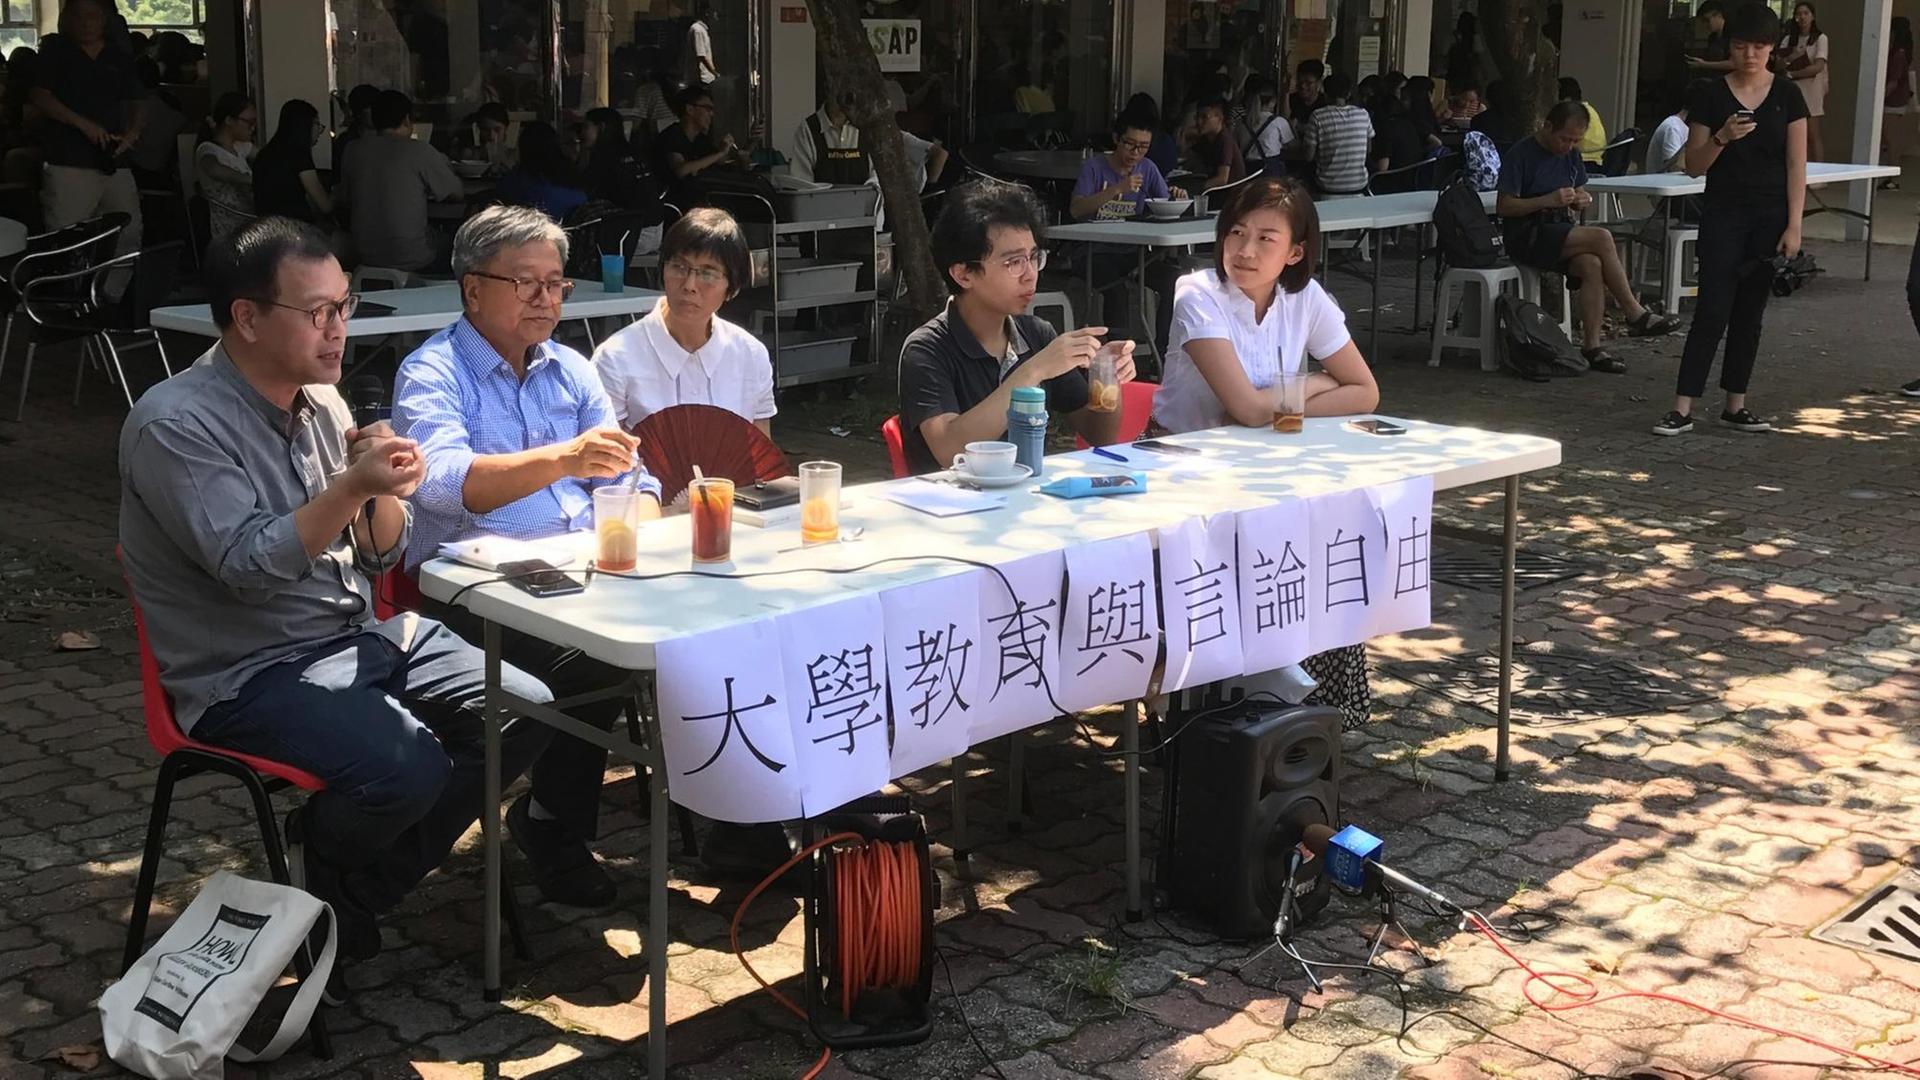 Bei einer Veranstaltung der Chinese University wird über die Unabhängigkeit diskutiert.